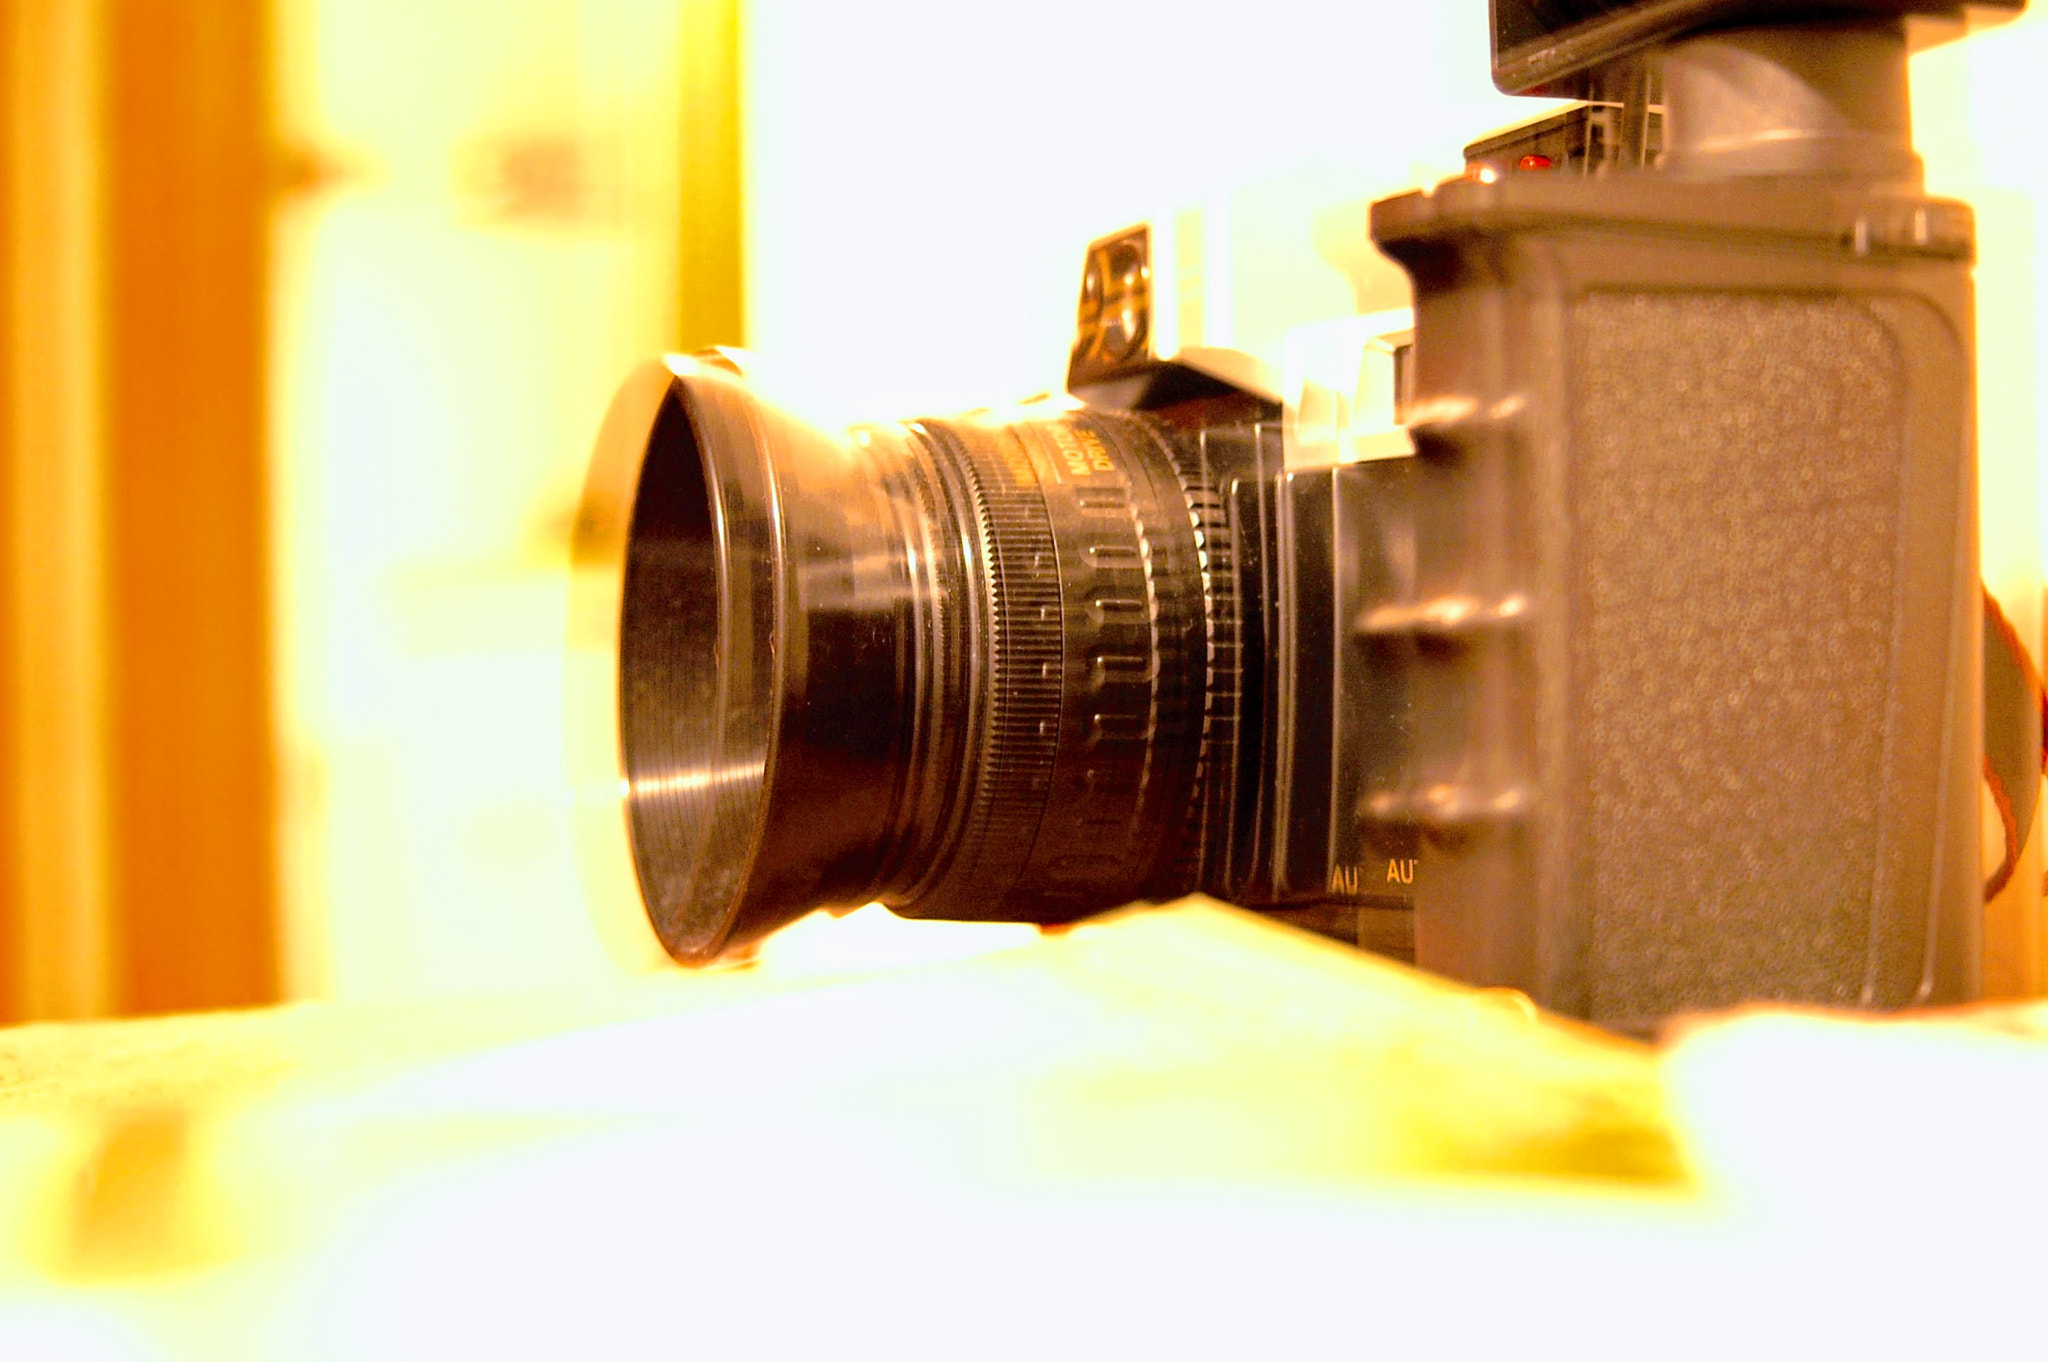 AF Zoom-Nikkor 35-80mm f/4-5.6D sample photo. Meta photography